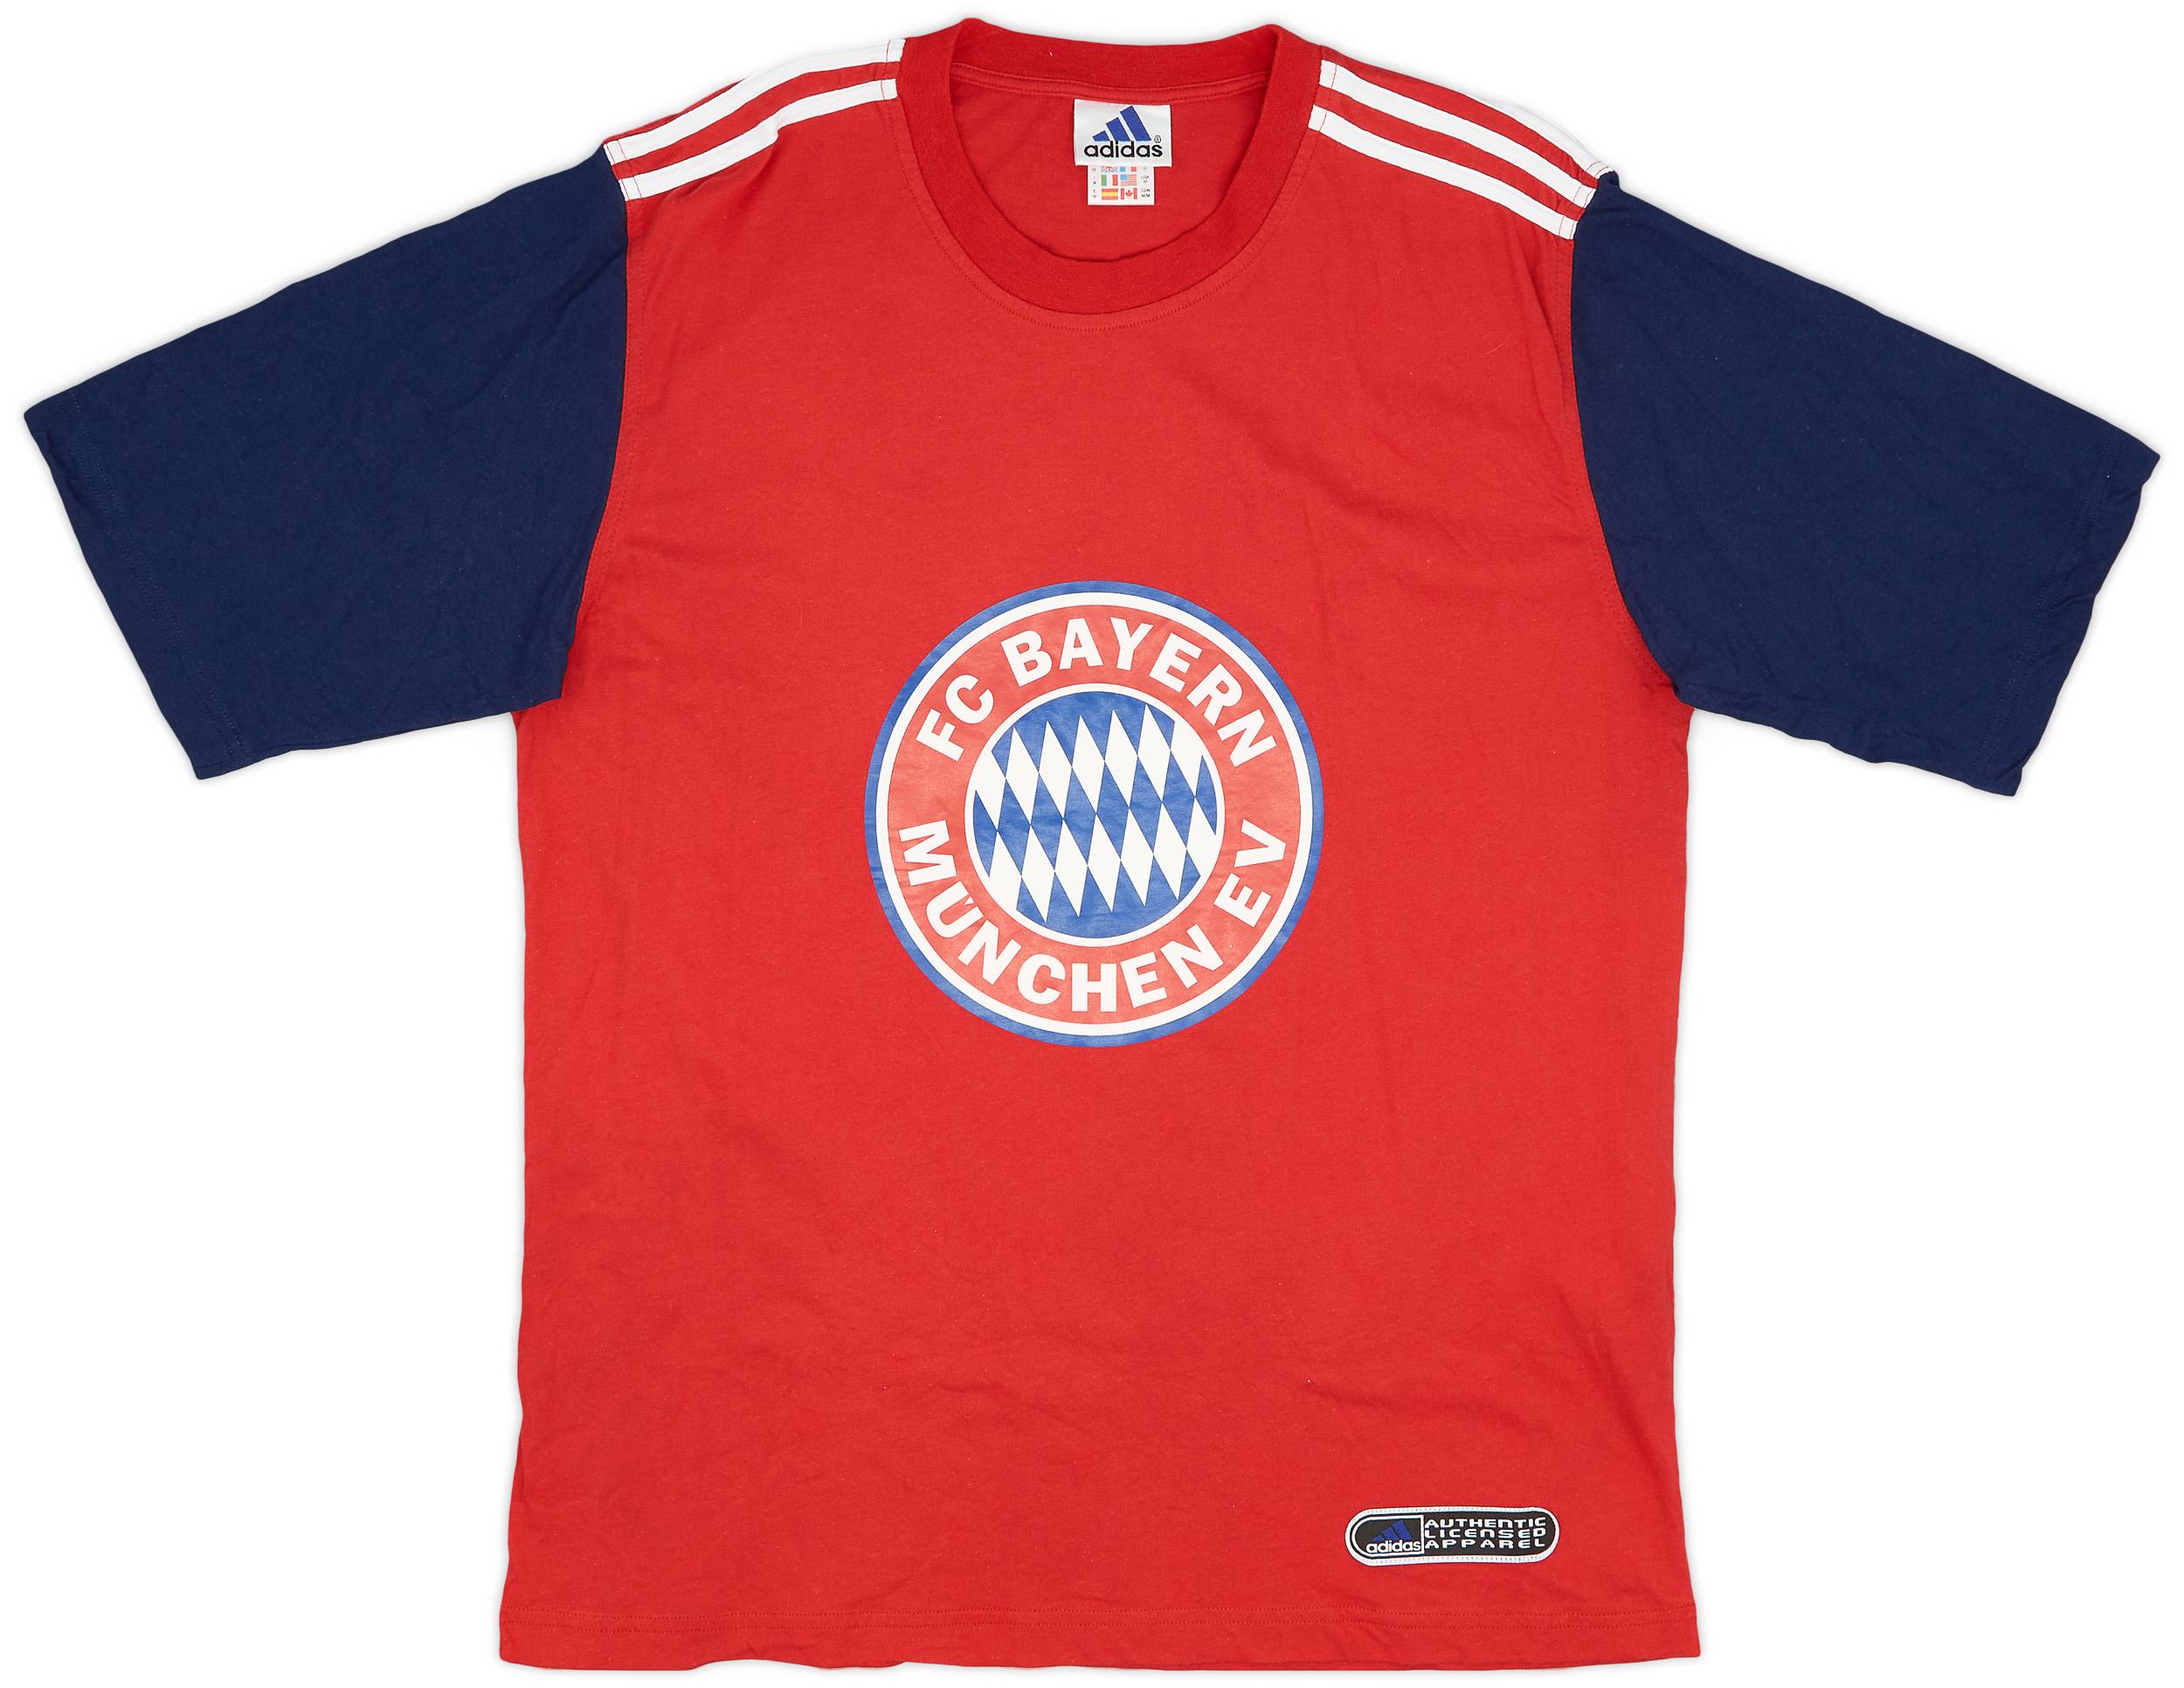 1999-00 Bayern Munich adidas Graphic Tee - 9/10 - (M)